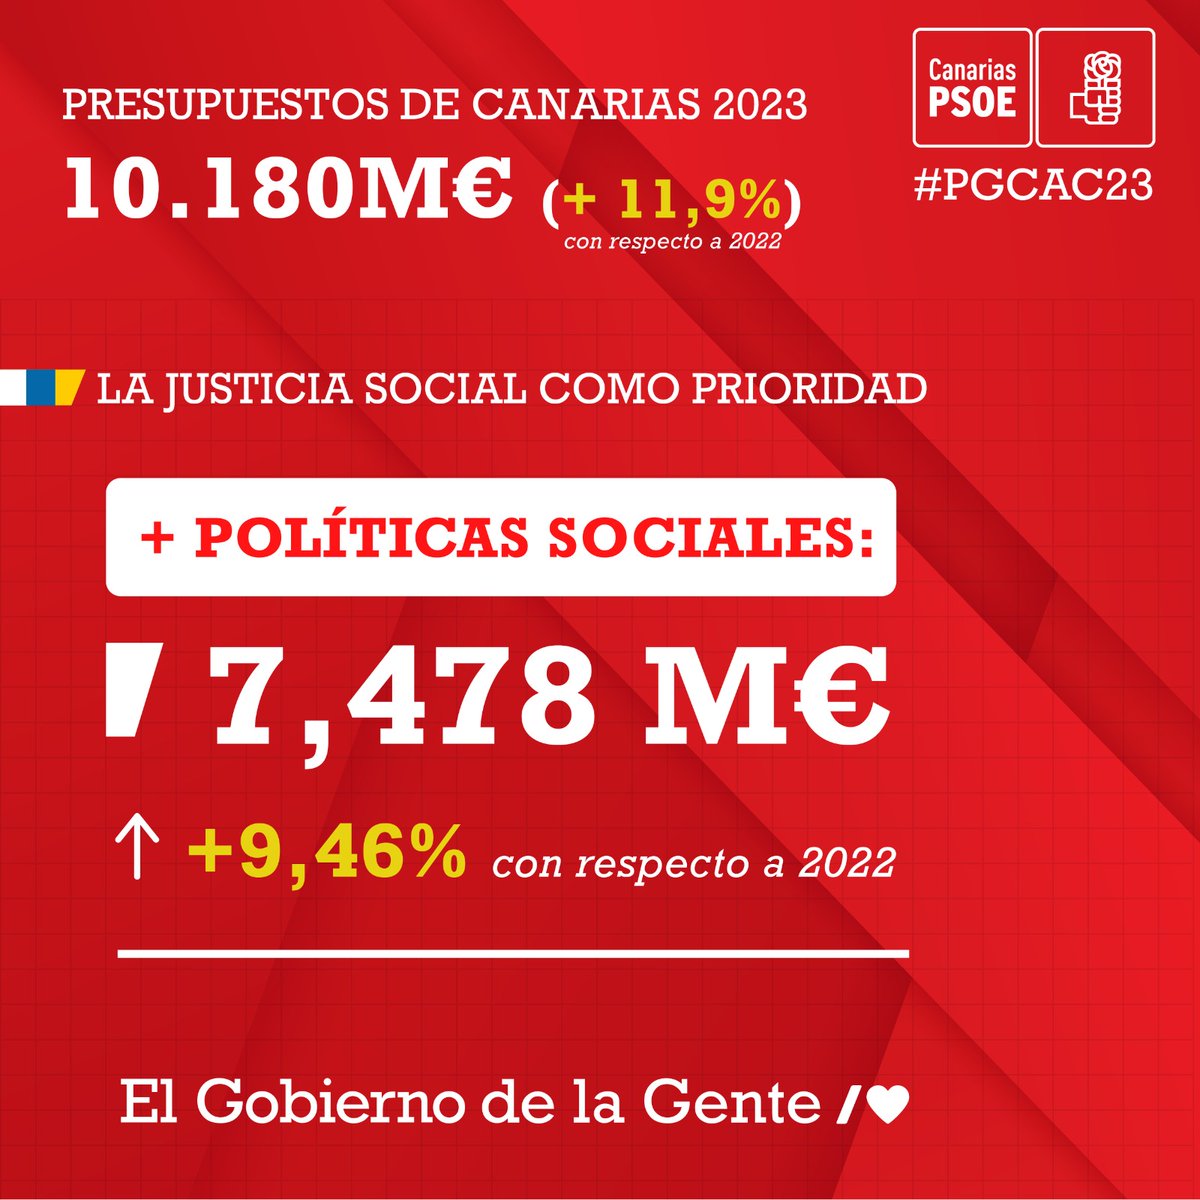 Avanzar en justicia social y garantizar la prosperidad económica de #Canarias 👉🏽 Los #PGCAC23 tienen claro sus prioridades #ElGobiernoDeLaGente